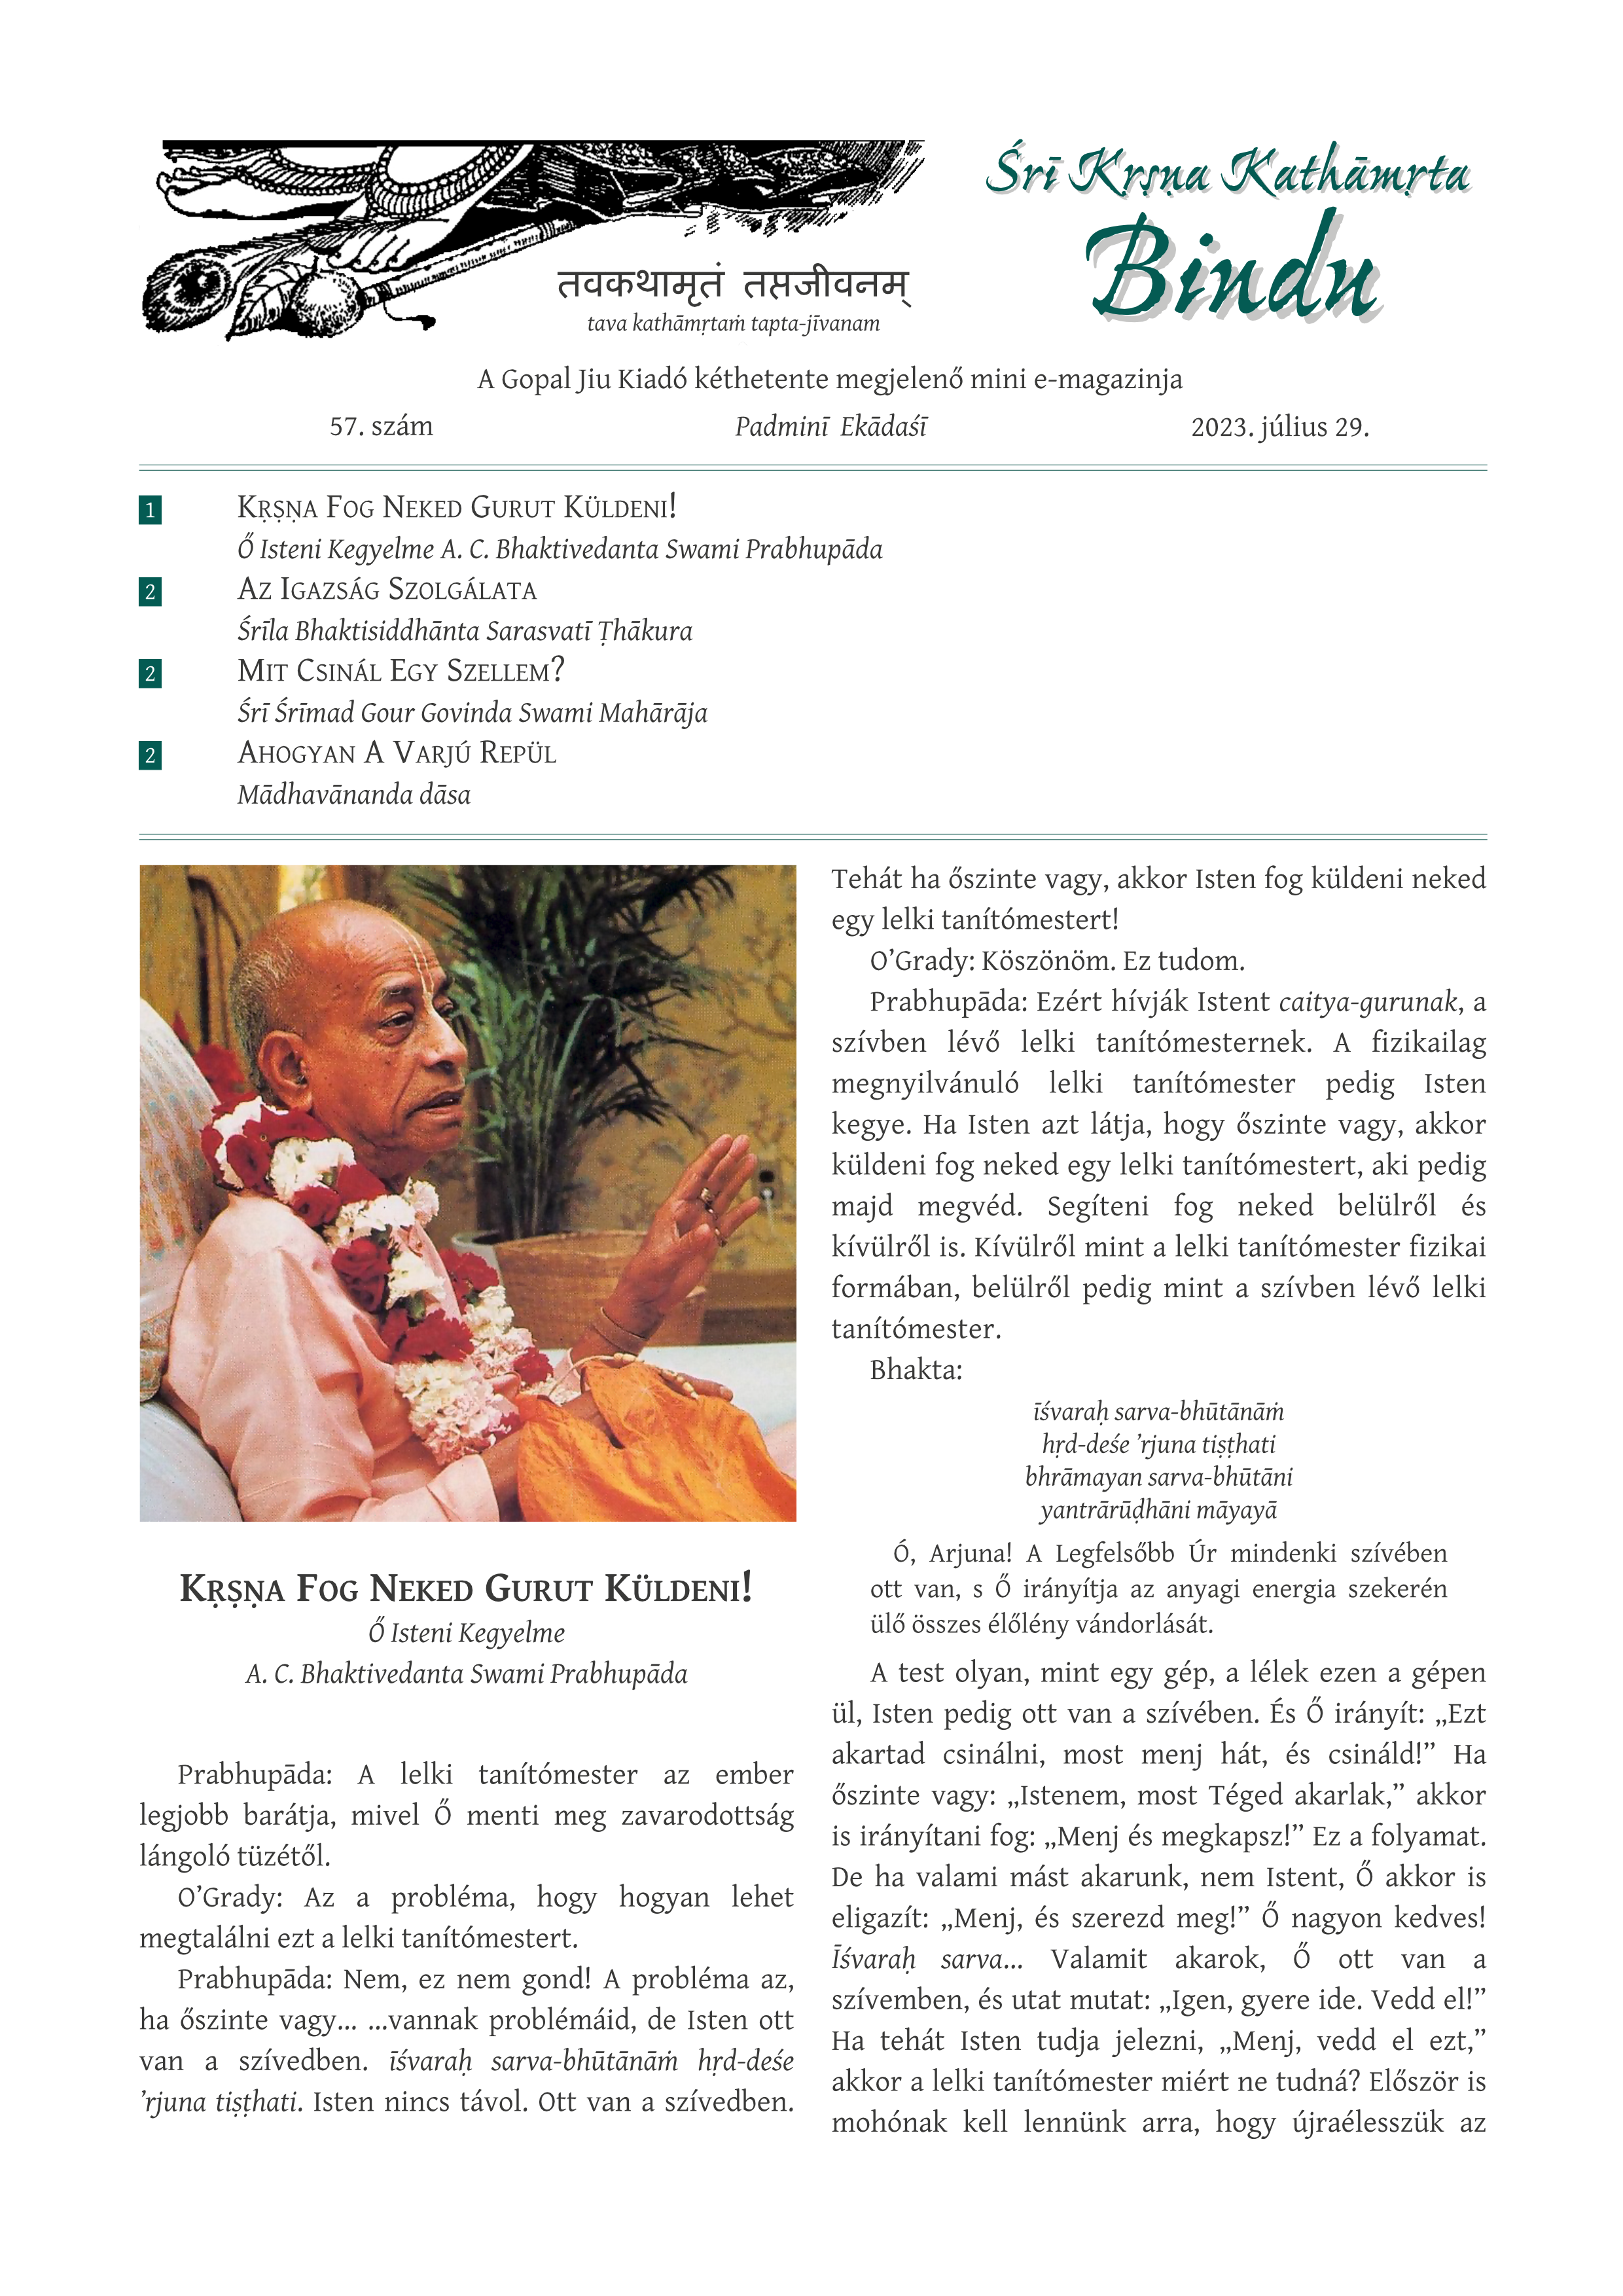 Sri Krsna Kathamrta Bindu #57